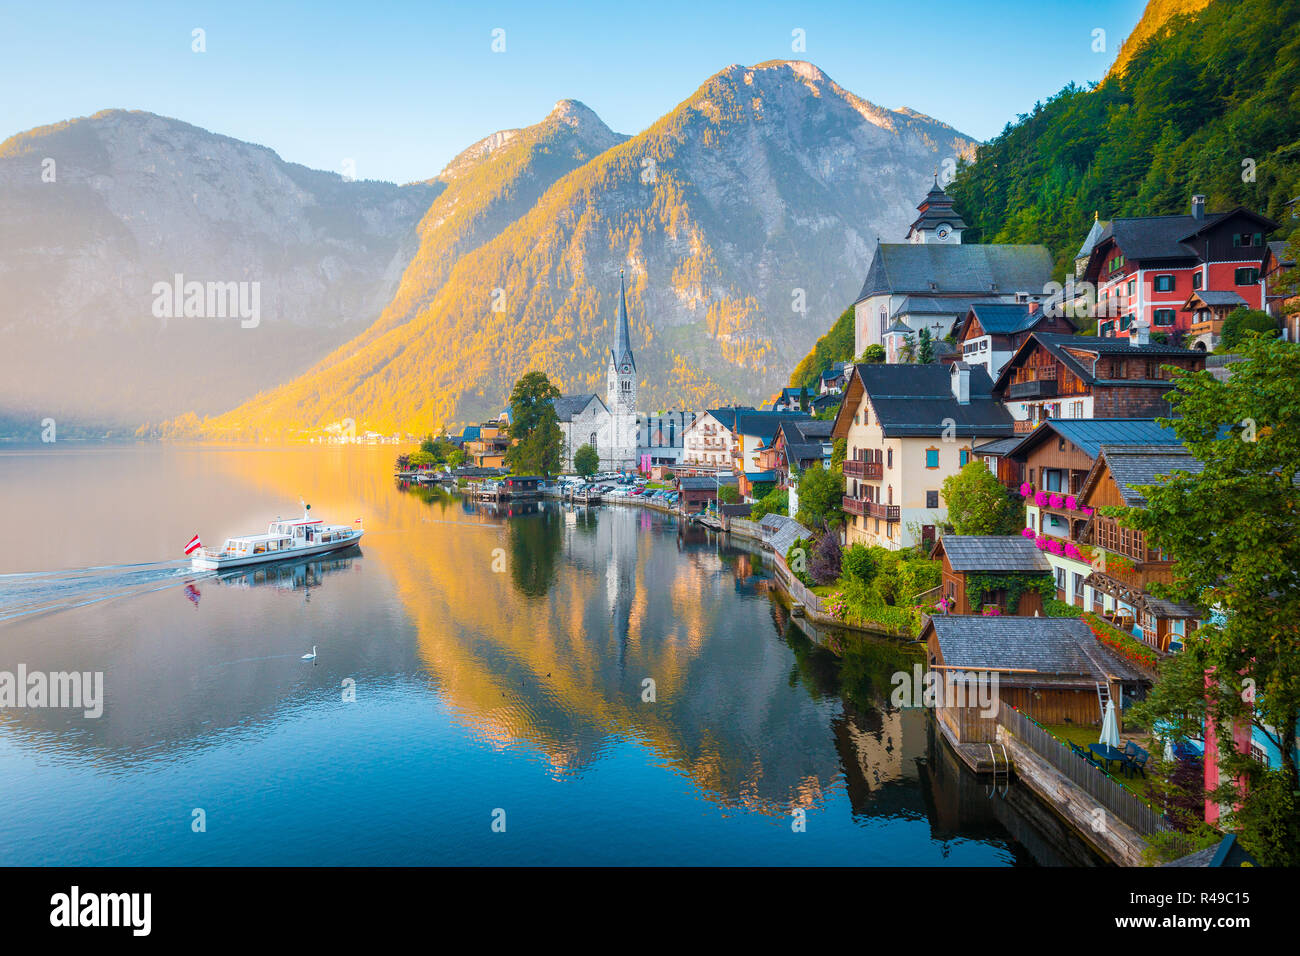 Klassische Postkarte Blick auf berühmte Hallstatt Stadt am See in den Alpen mit traditionellen Fahrgastschiff in den frühen Morgen bei Sonnenaufgang auf einem schönen d Stockfoto